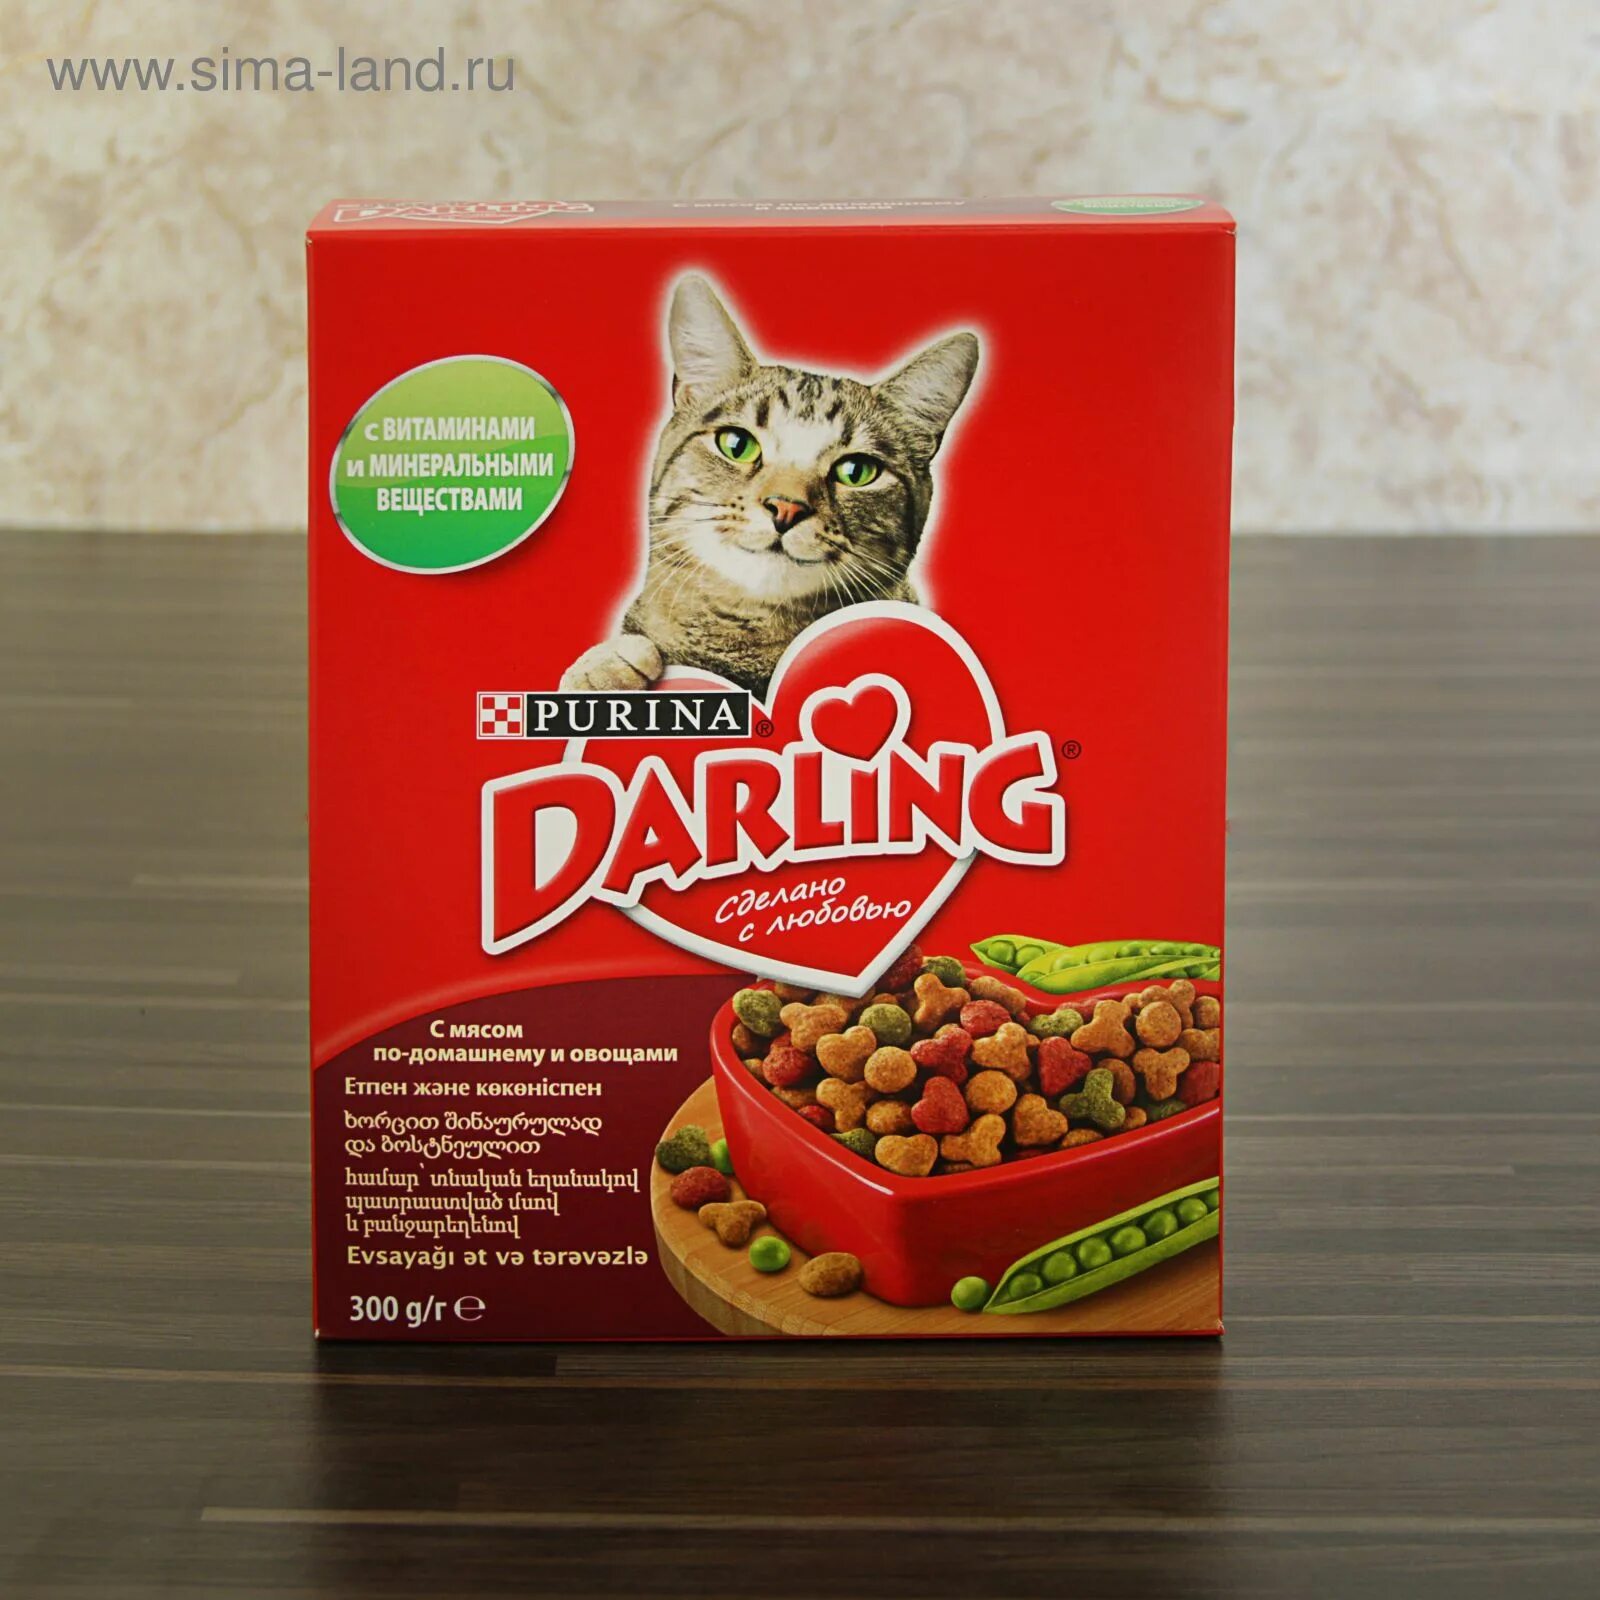 Лучшие корма для кошек супер. Дарлинг корма для кошек. Пурина Дарлинг для кошек. Сухой корм для кошек Darling. Дарлинг корм для кошек сухой мясо овощи.